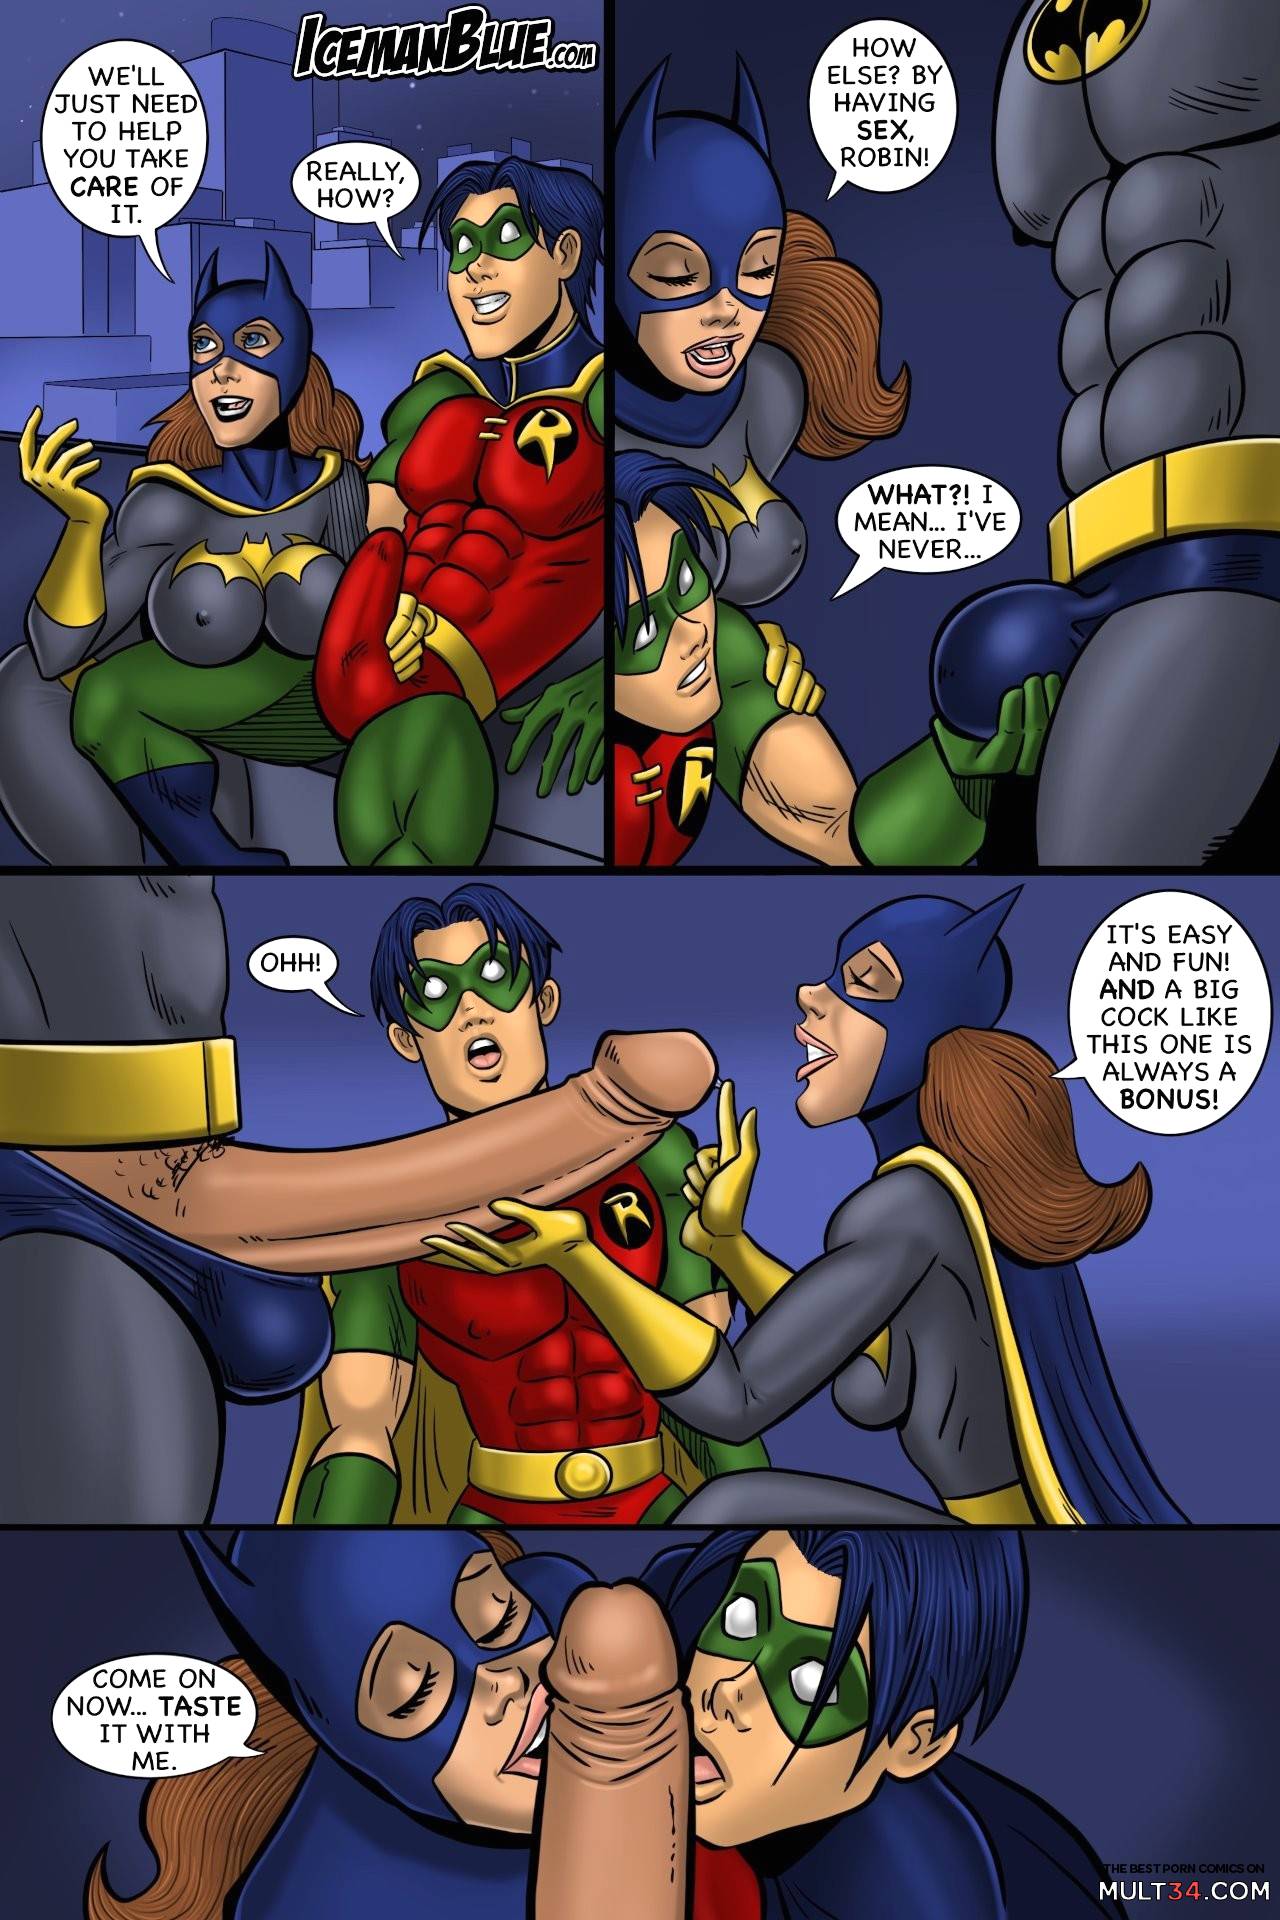 Batgirl gay porn comic - the best cartoon porn comics, Rule 34 | MULT34